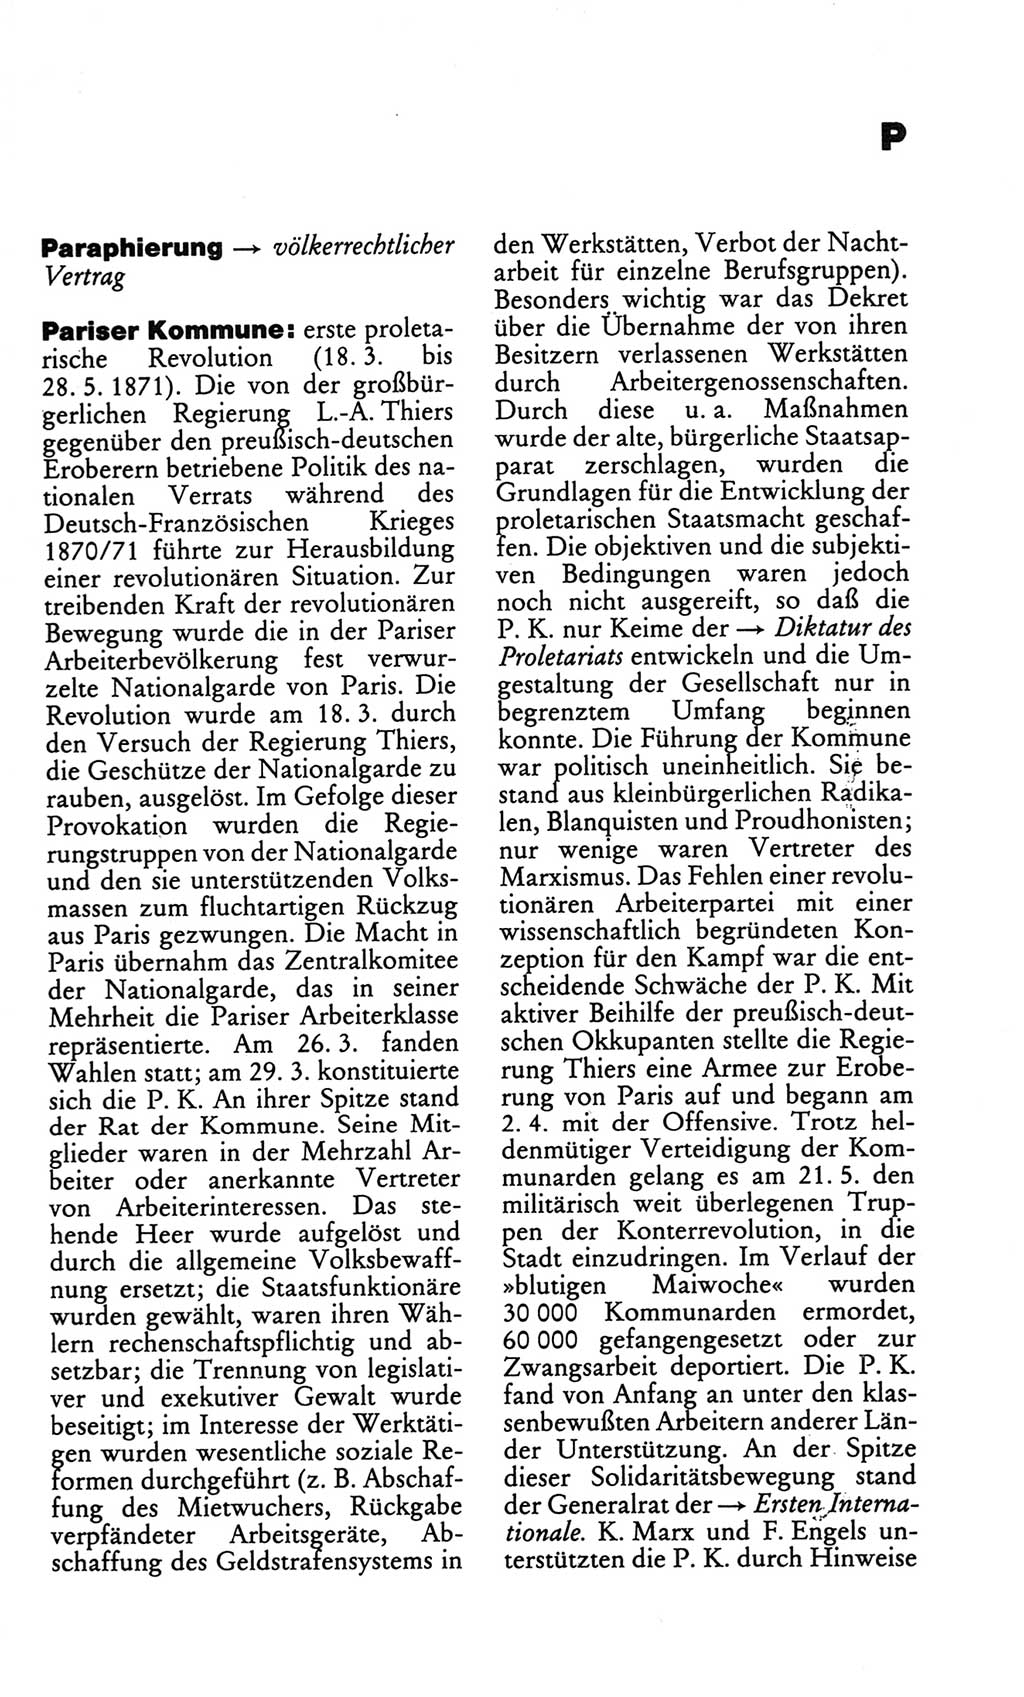 Kleines politisches Wörterbuch [Deutsche Demokratische Republik (DDR)] 1986, Seite 717 (Kl. pol. Wb. DDR 1986, S. 717)